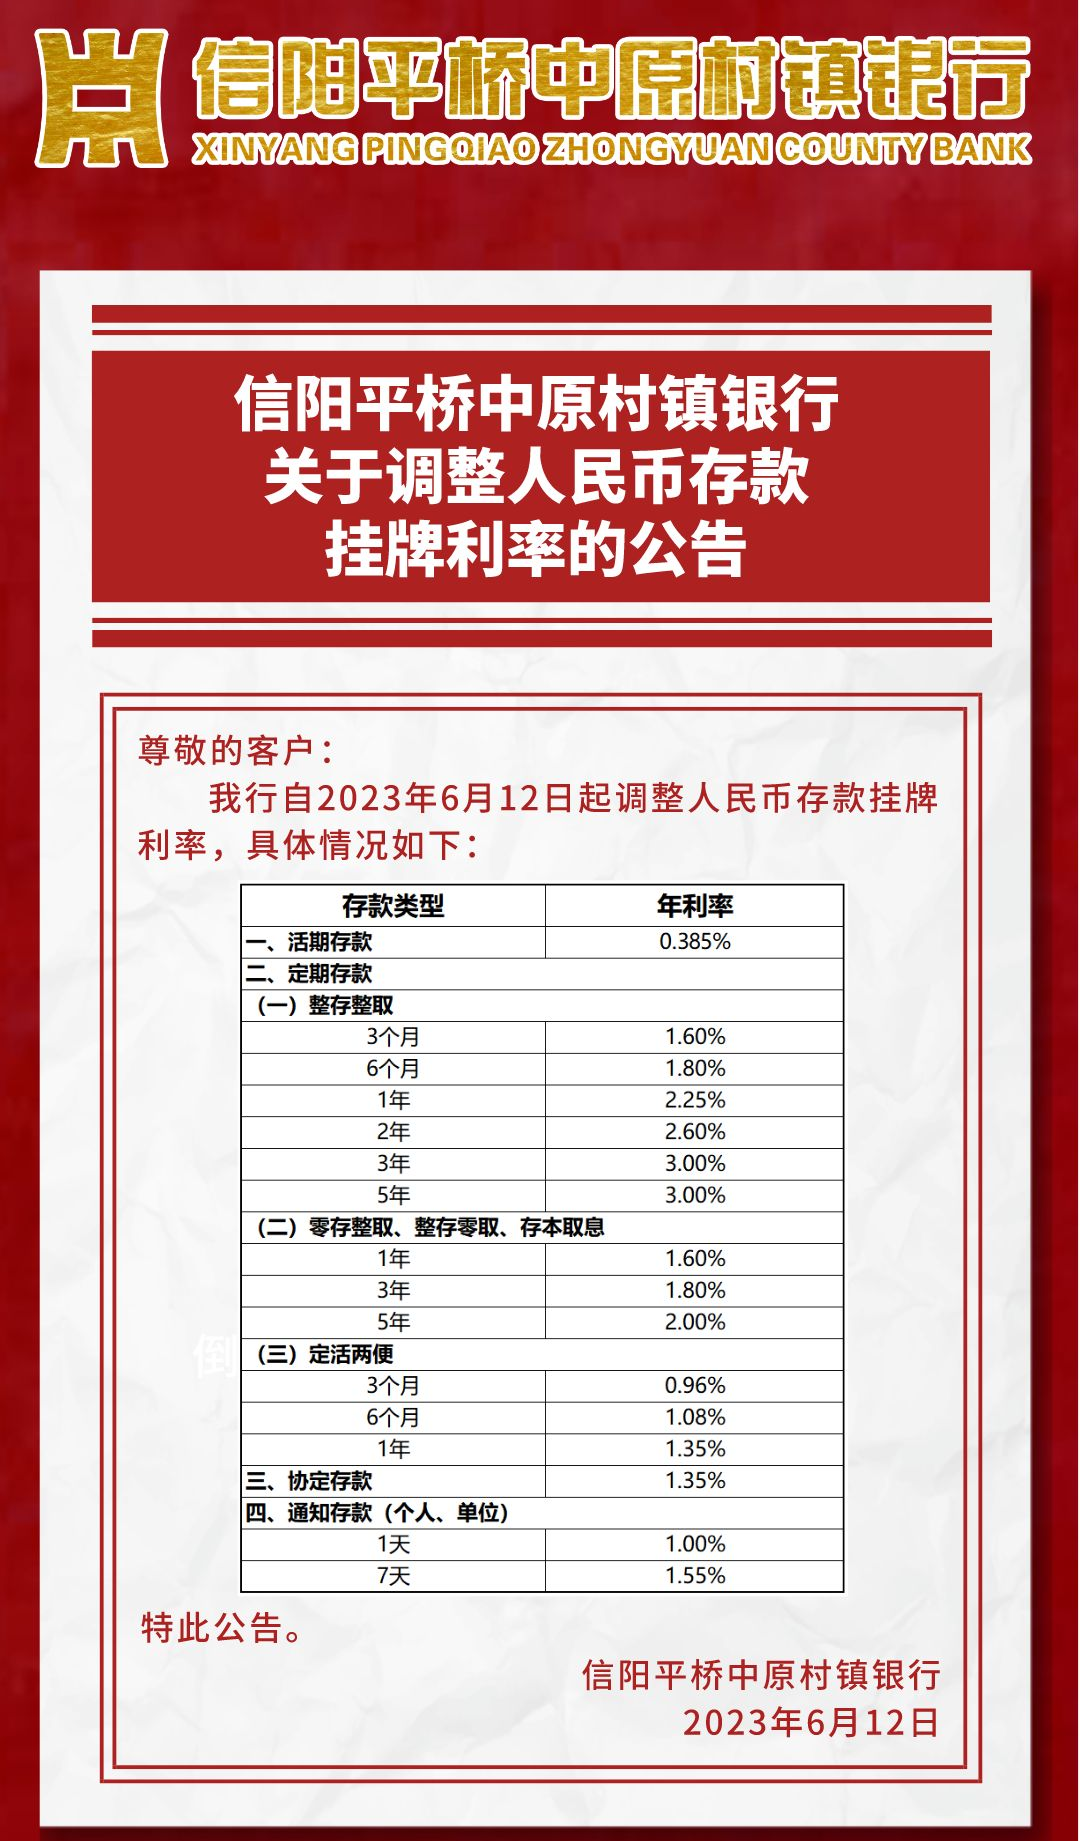 五年定期存款利率_江苏银行五年定期利率_鞍山银行五年定期利率是多少